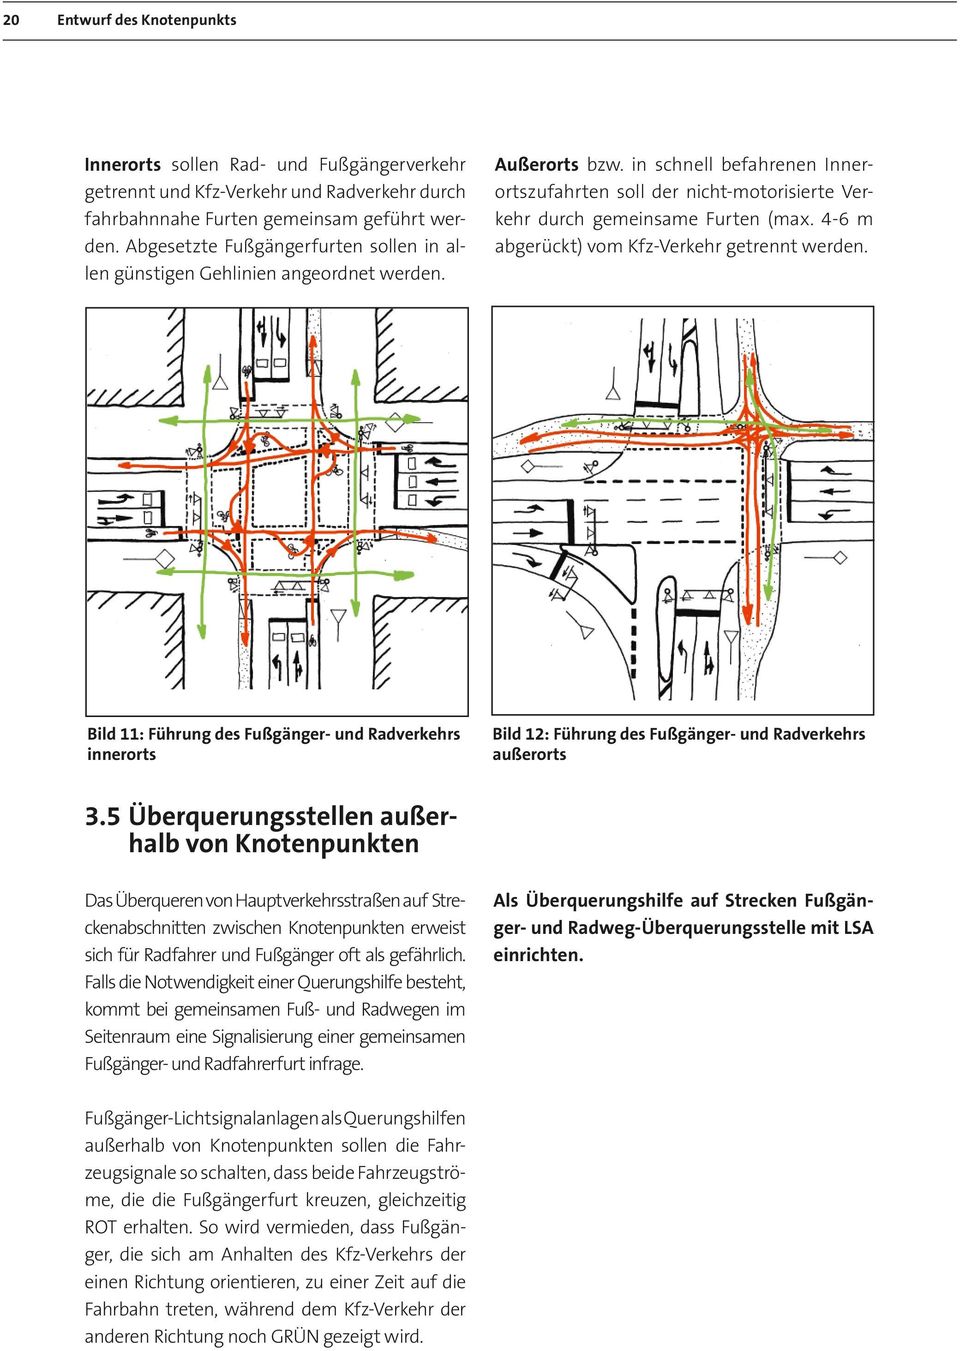 in schnell befahrenen Innerortszufahrten soll der nicht-motorisierte Verkehr durch gemeinsame Furten (max. 4-6 m abgerückt) vom Kfz-Verkehr getrennt werden.